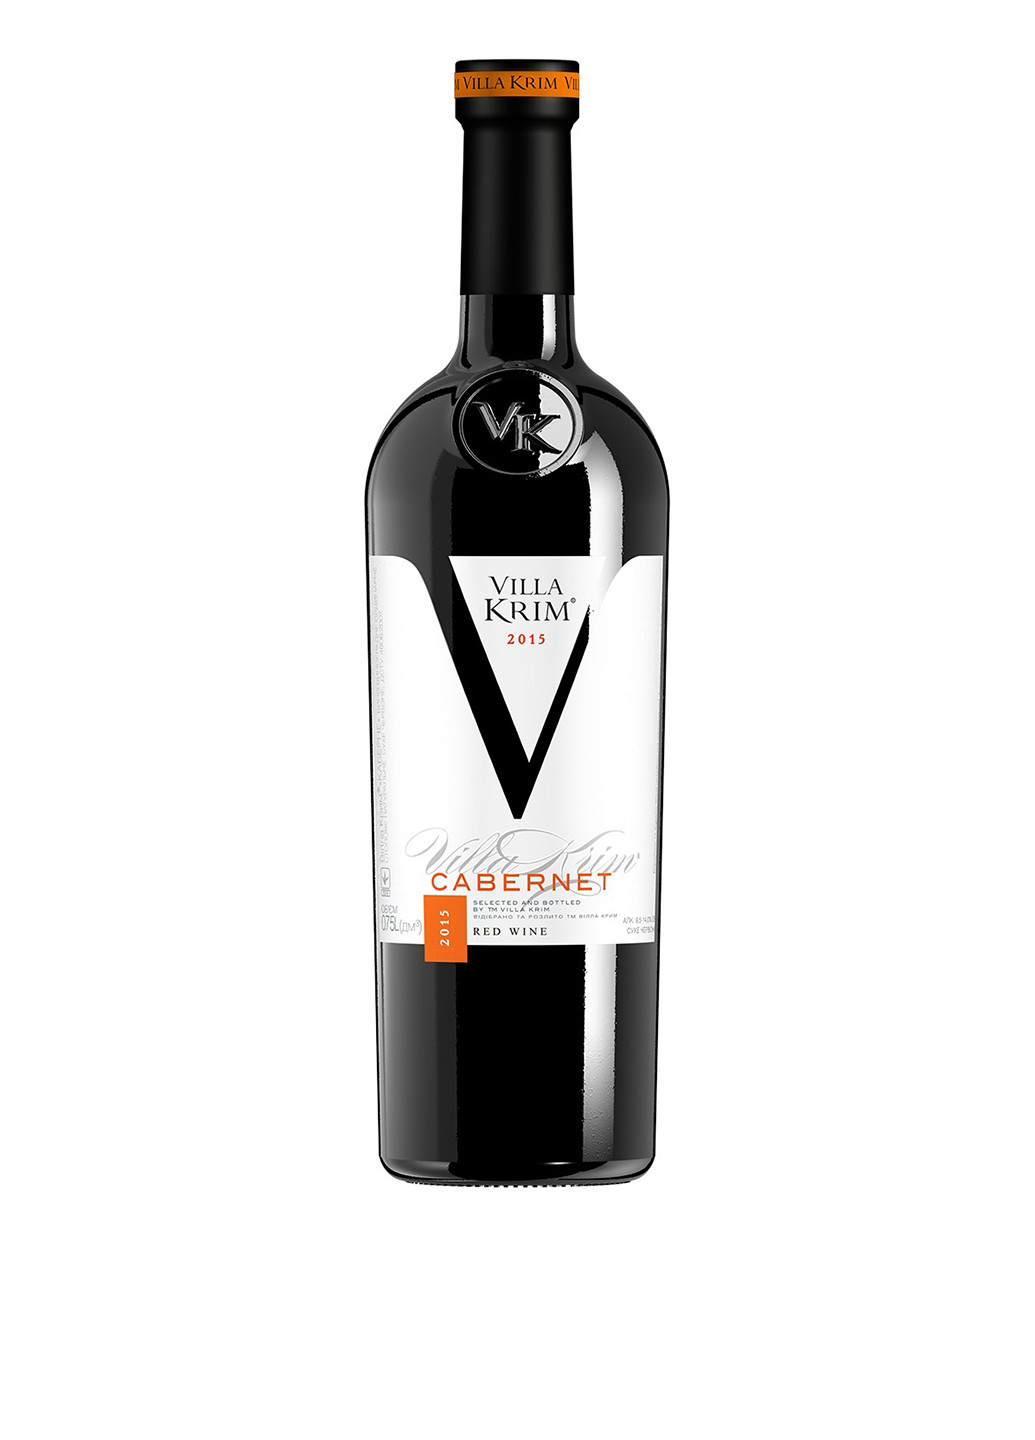 Вино красное сухое Каберне, 0,75 л Villa Krim каберне кр.сух 0,75 (183658494)